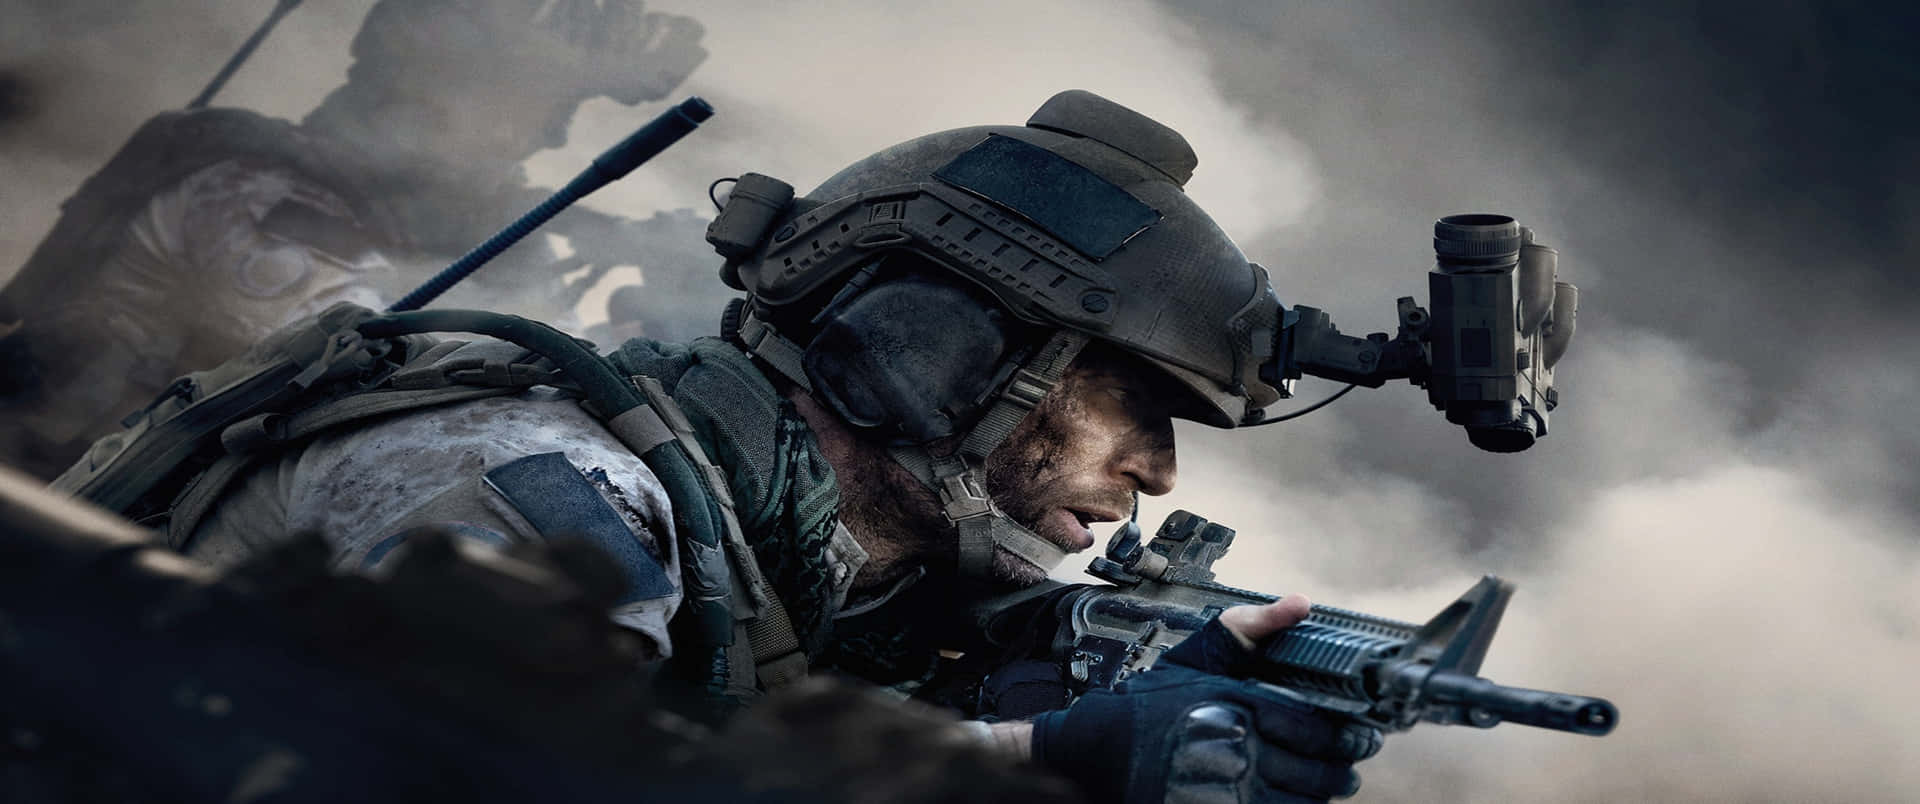 Fondode Pantalla De Johnny Mactavish En Call Of Duty Modern Warfare Con Una Resolución De 3440x1440p.